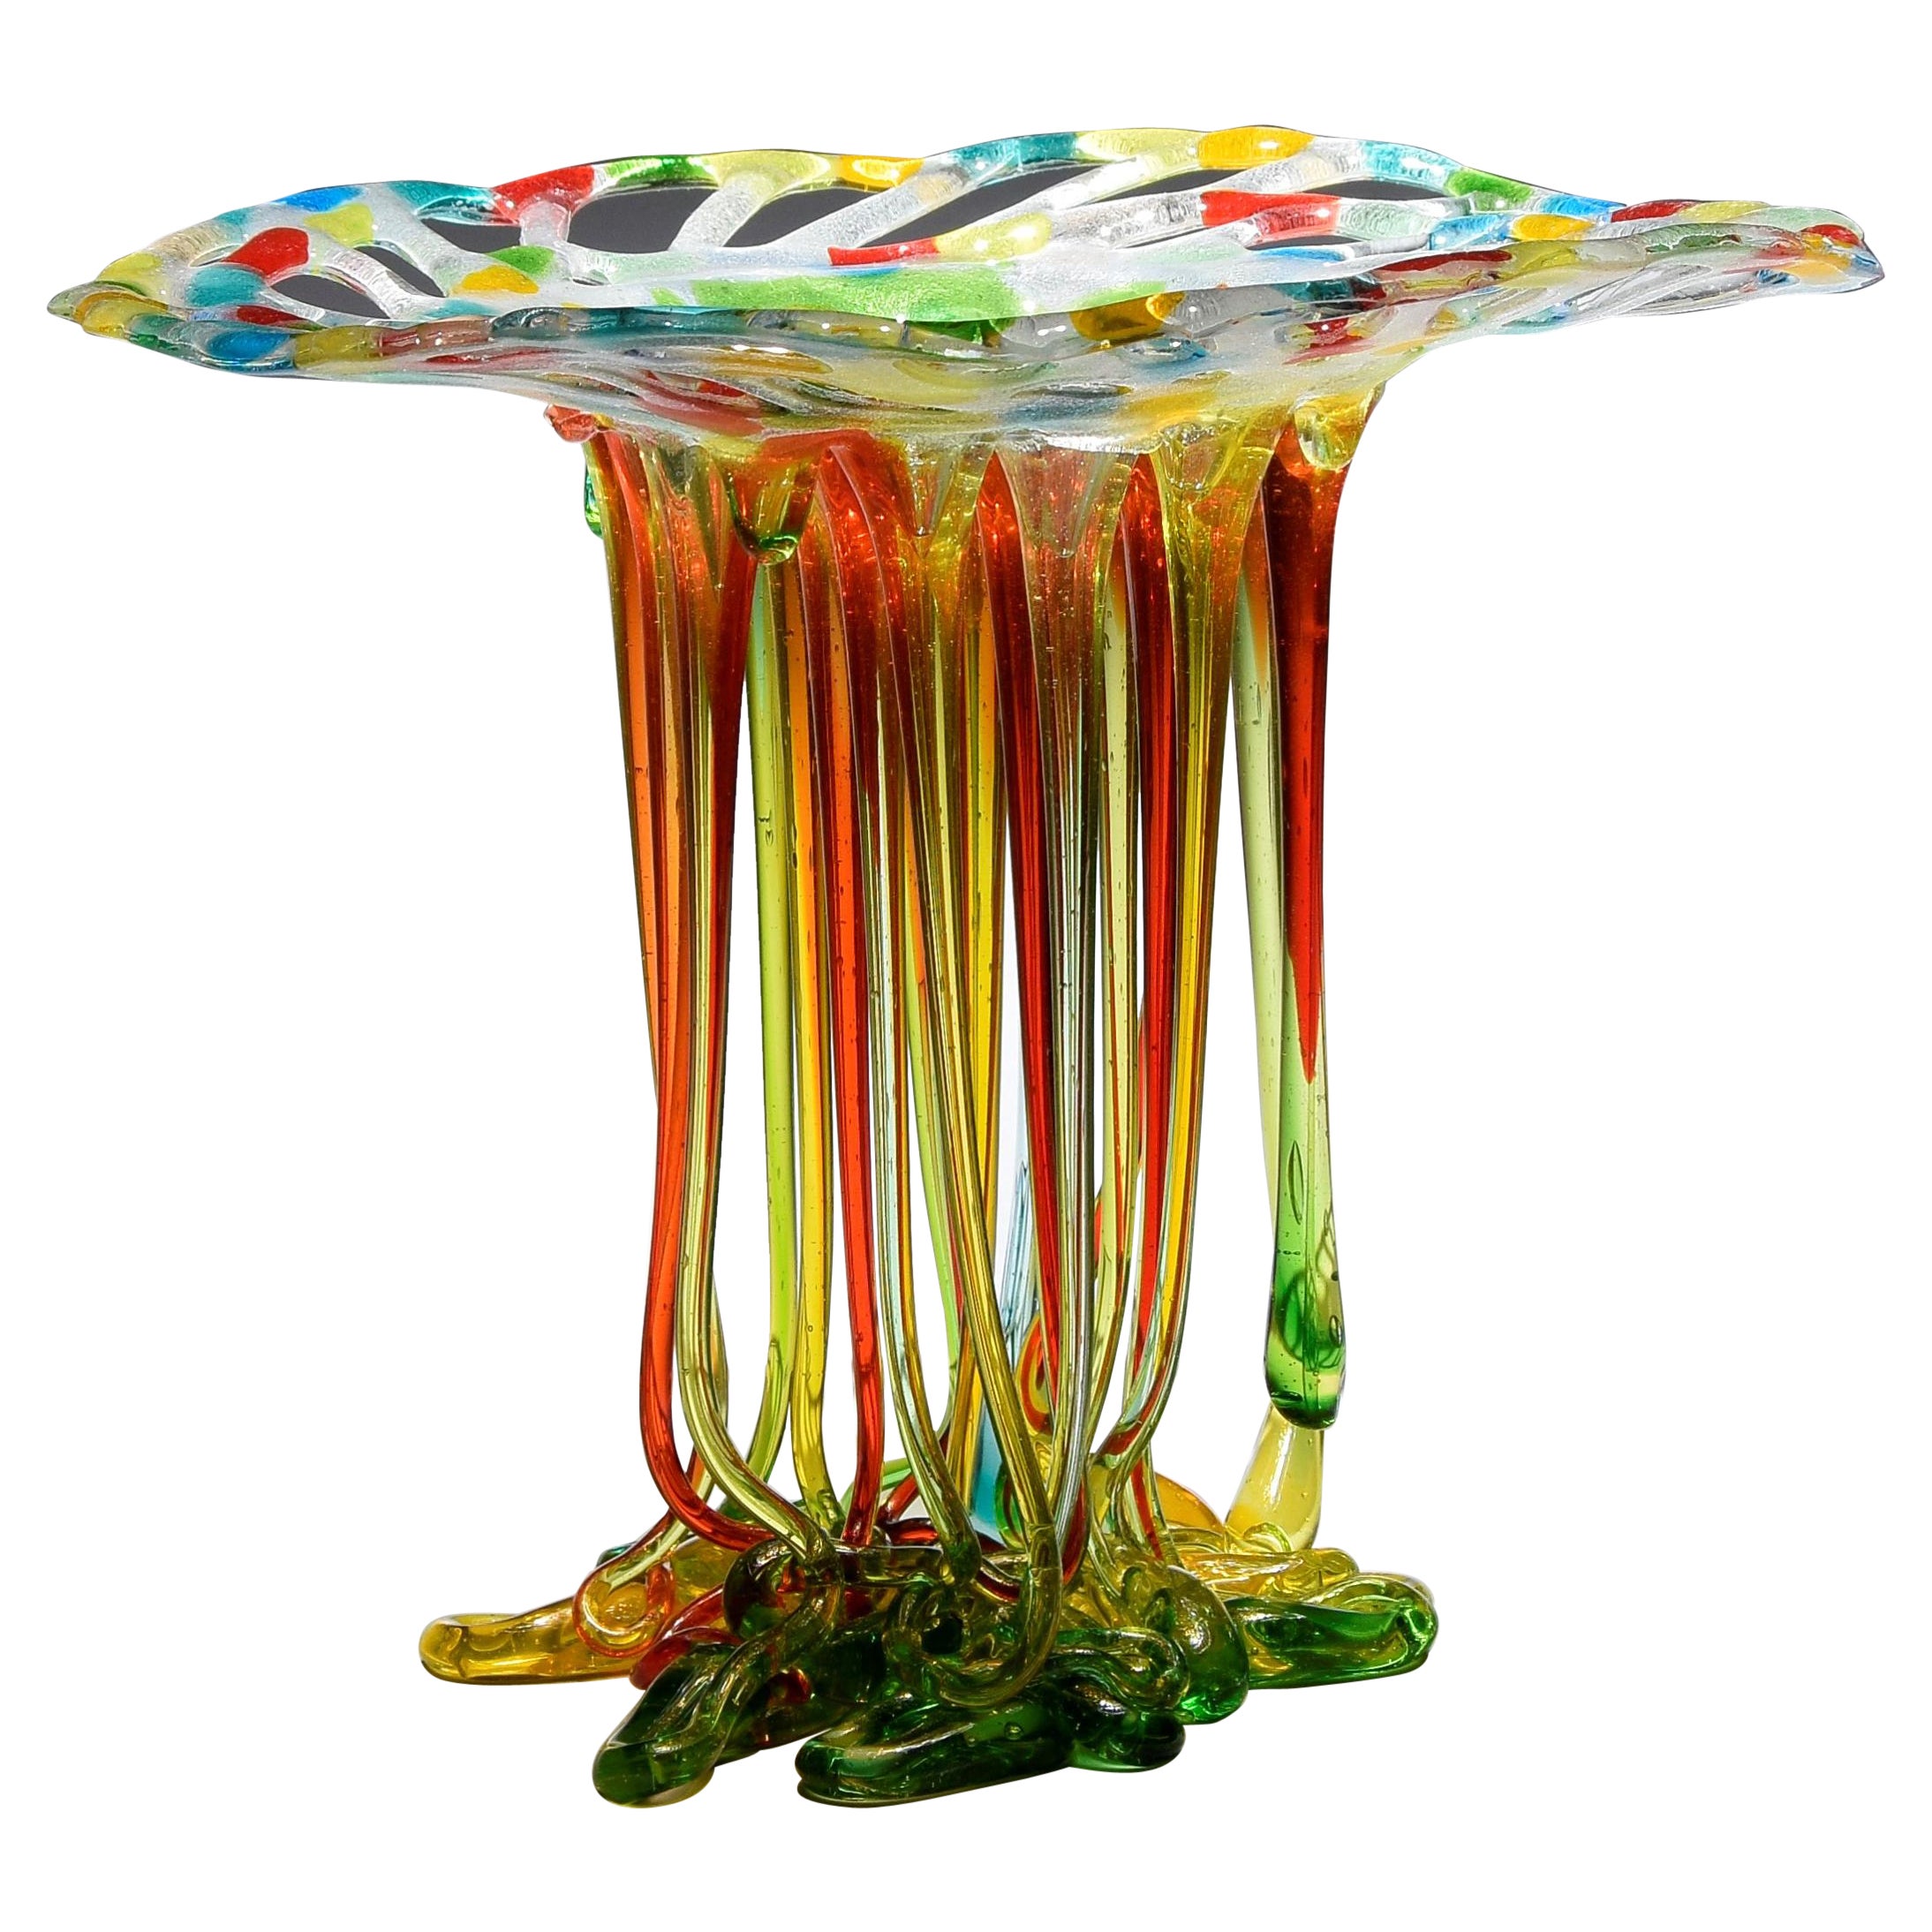 "Regenbogen", Murano Glas Tafelaufsatz, Handgemacht in Italien, Einzigartiges Design, 2022 im Angebot